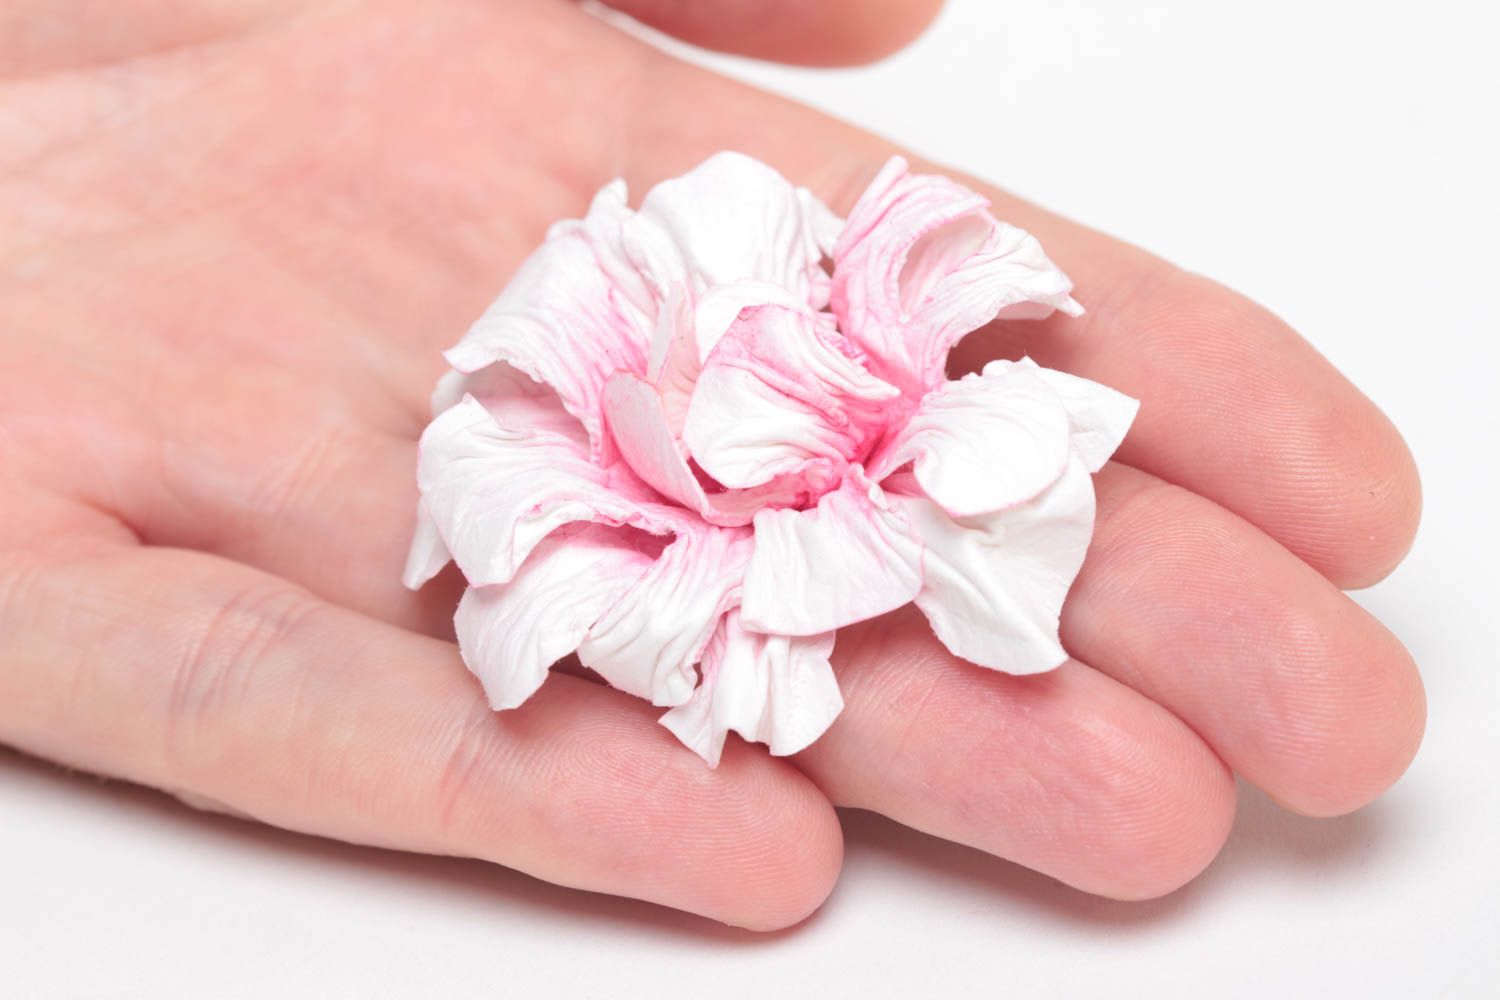 Нежный цветок из бумаги для создания изделий в технике скрапбукинг хэнд мэйд фото 5